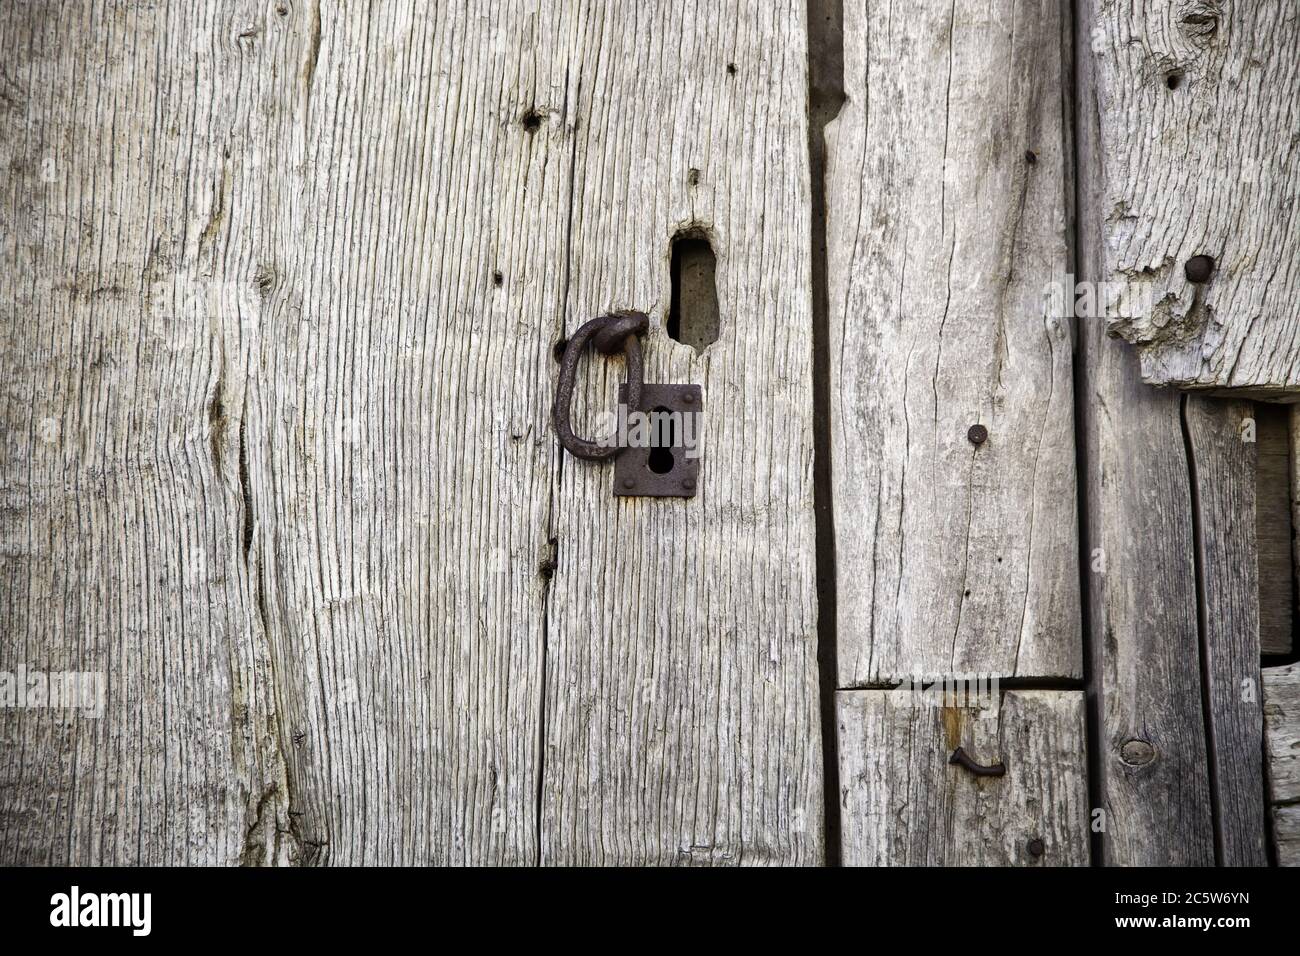 Ancienne porte en bois cassé, détail de texture en bois Banque D'Images